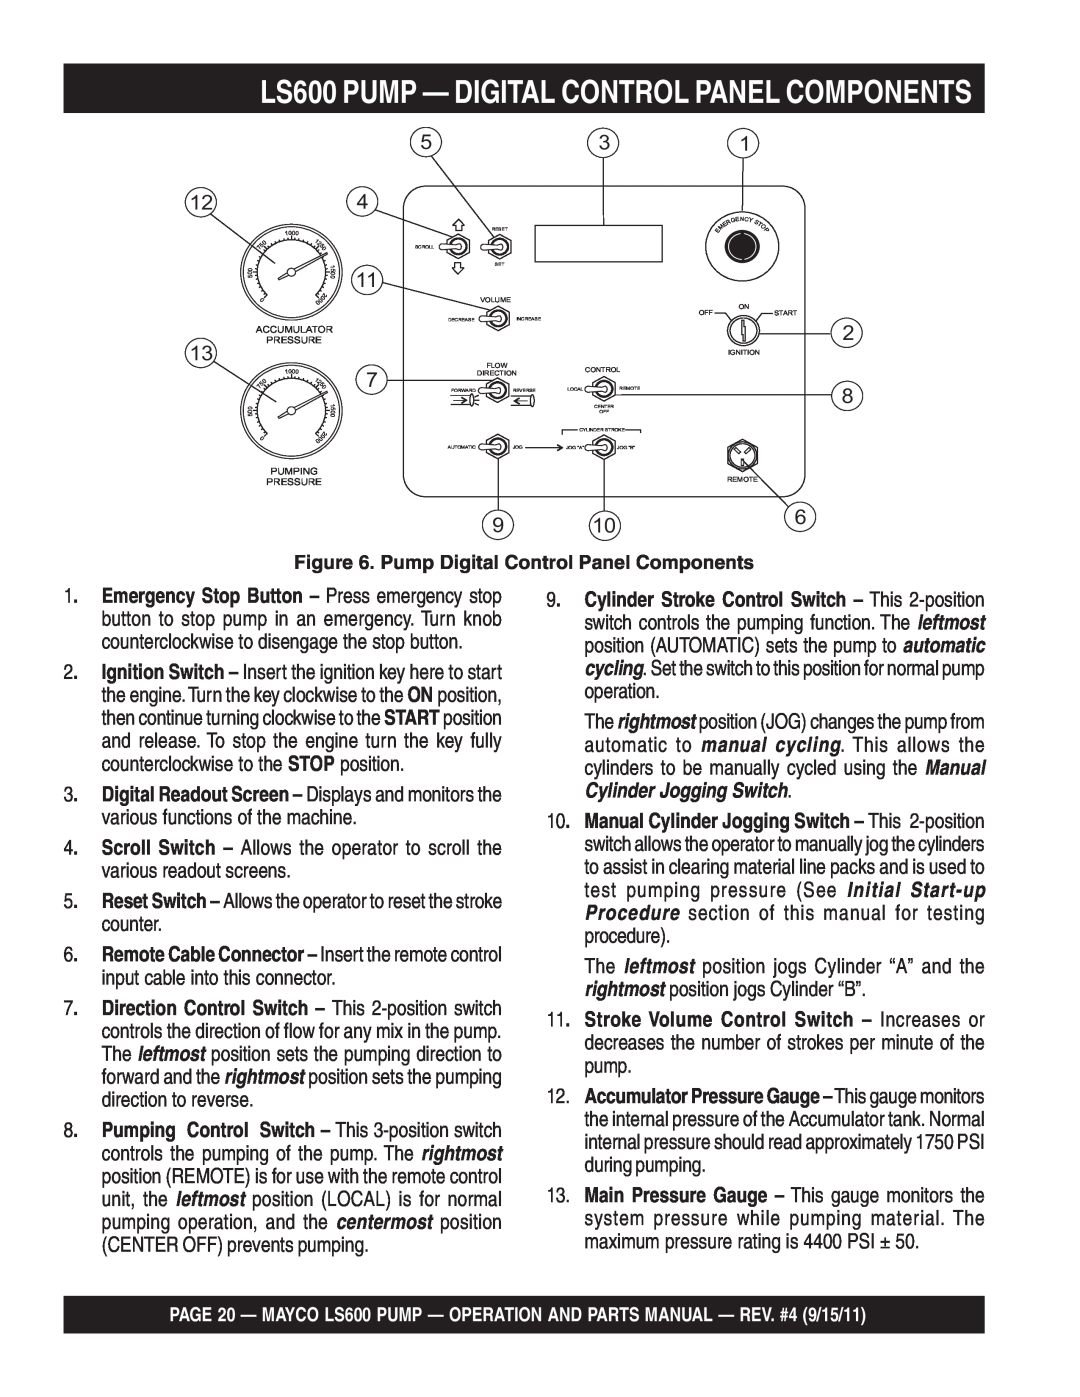 Multiquip manual LS600 PUMP — DIGITAL CONTROL PANEL COMPONENTS, 11 7, various readout screens, counter 